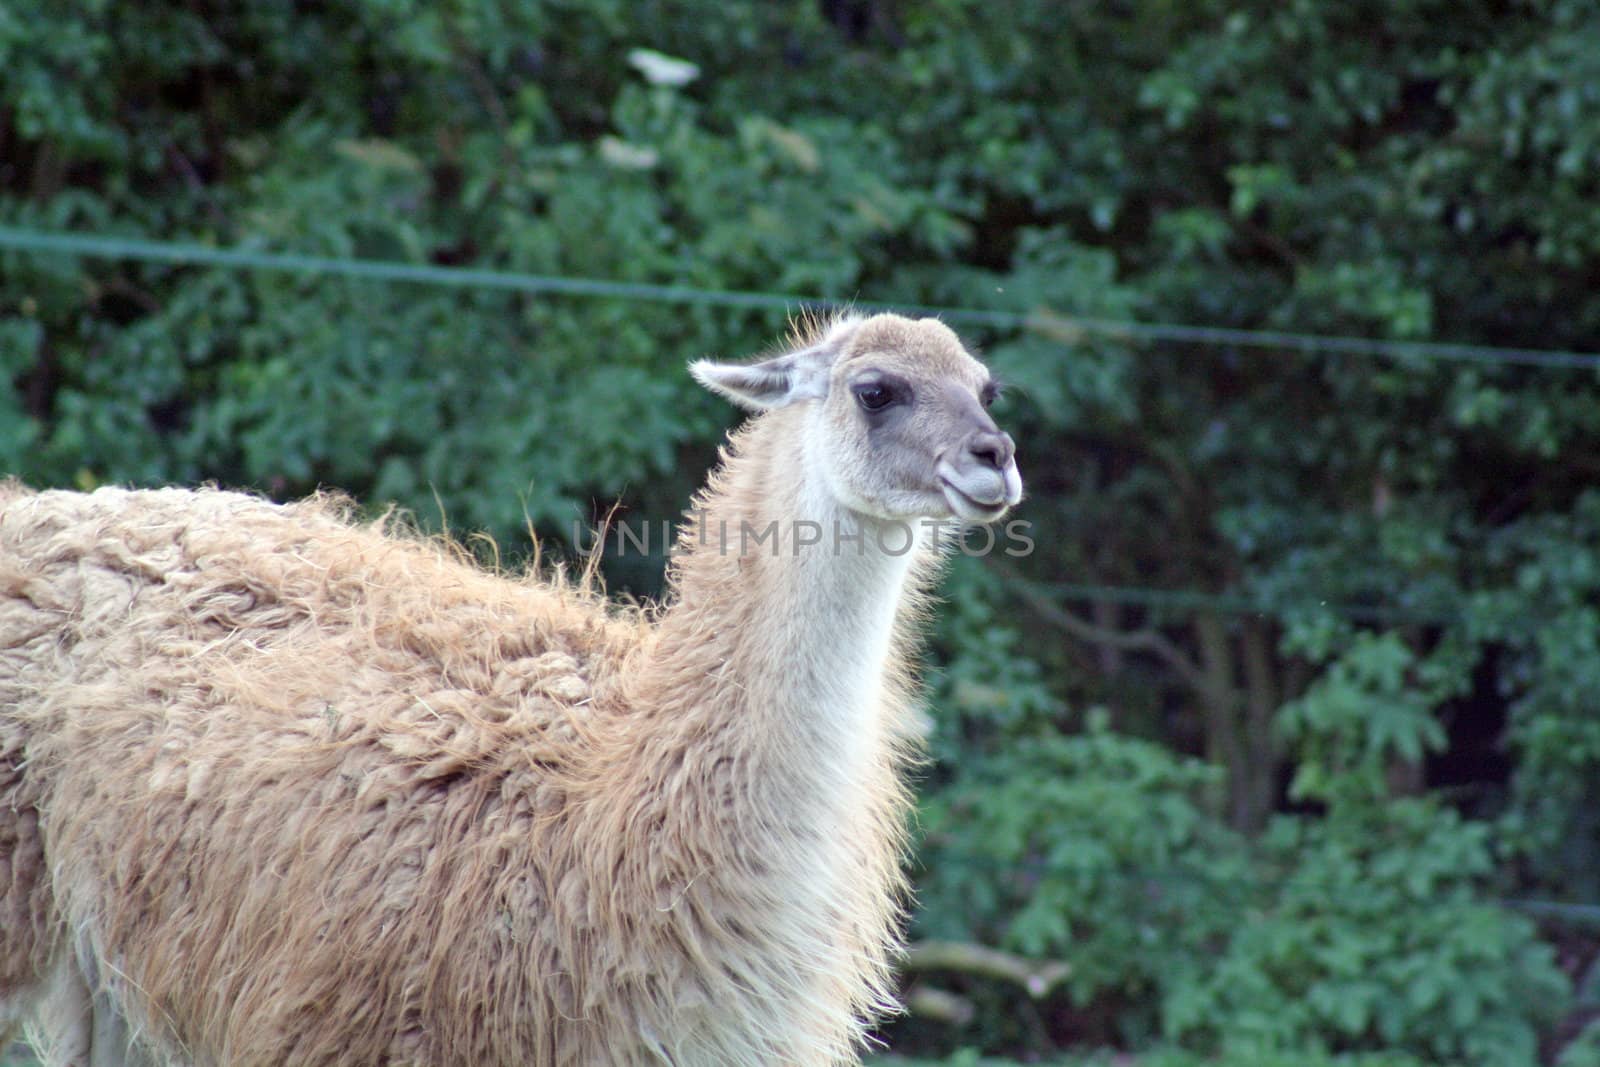 llama in a field by lizapixels